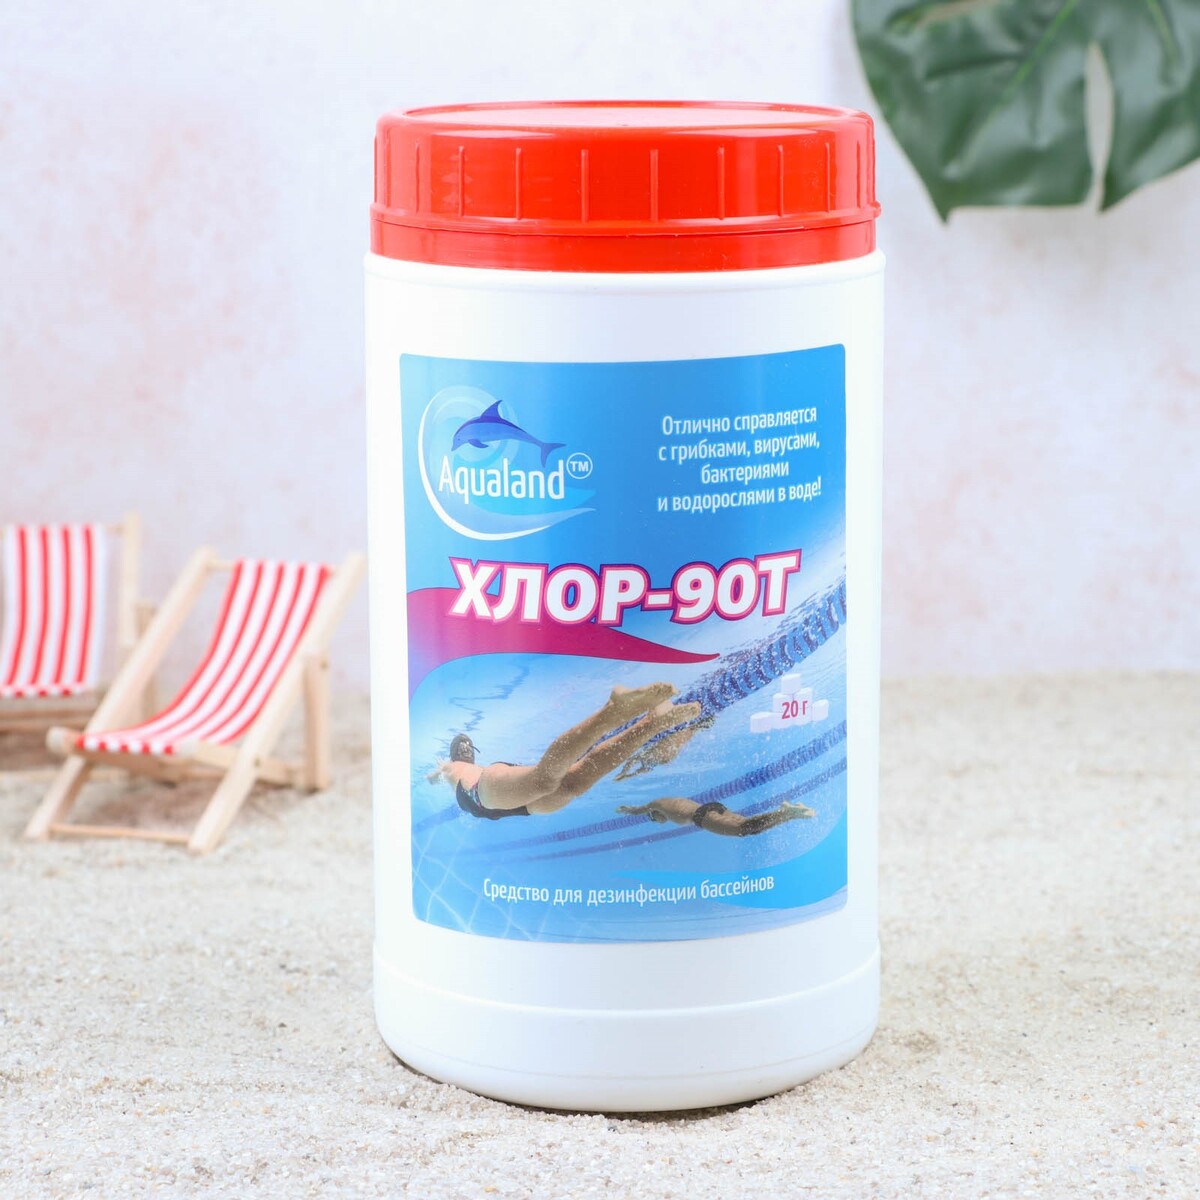 Дезинфицирующее средство aqualand хлор-90т, таблетки 20 г, 1 кг Aqualand